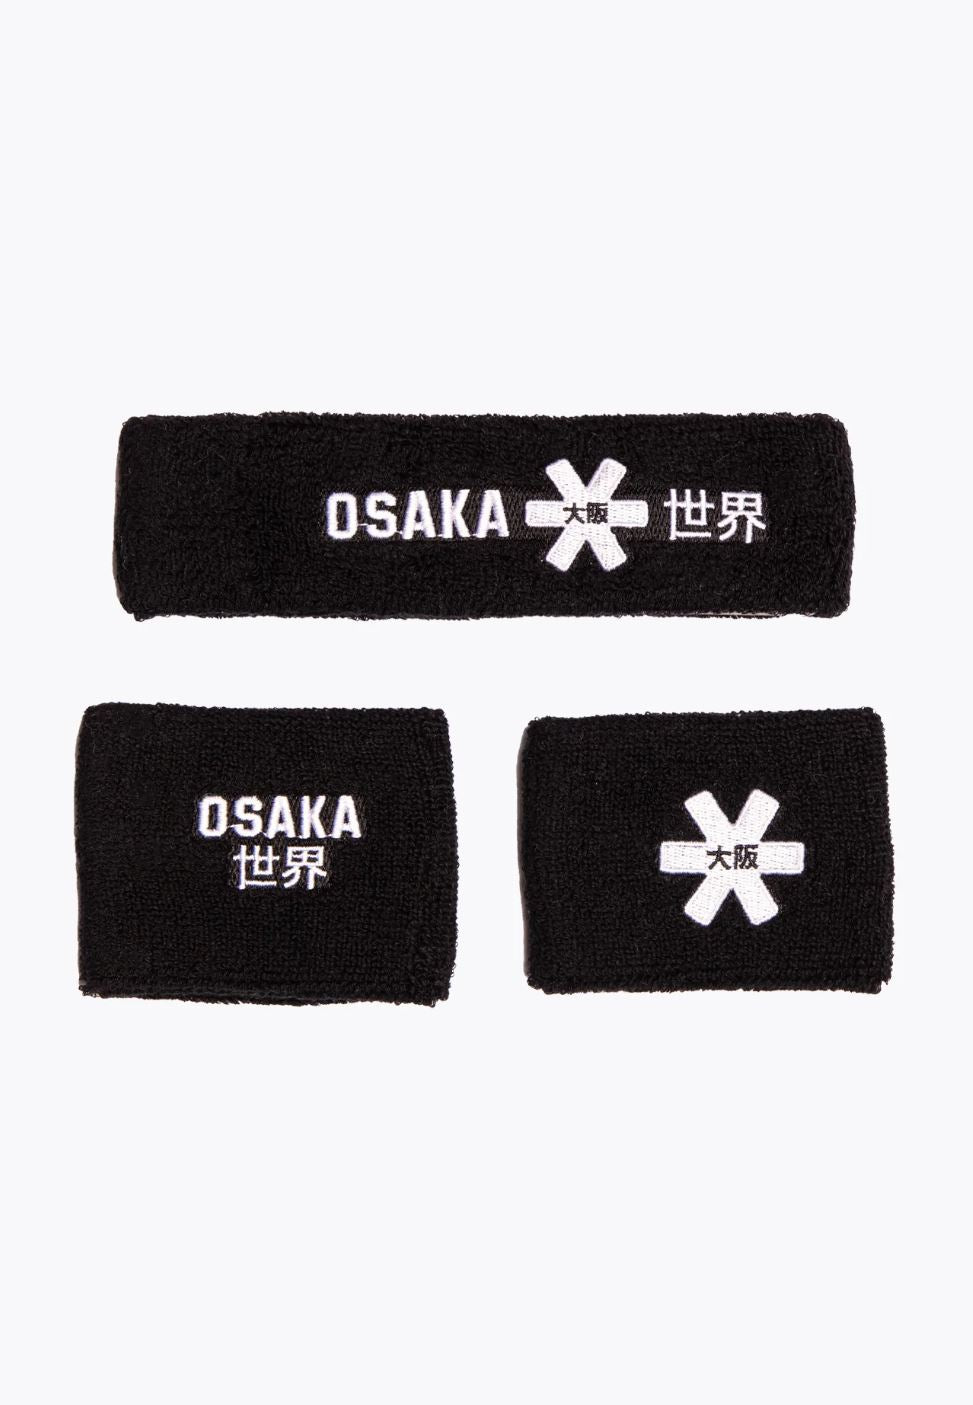 Osaka Zweetband Set (Zwart)